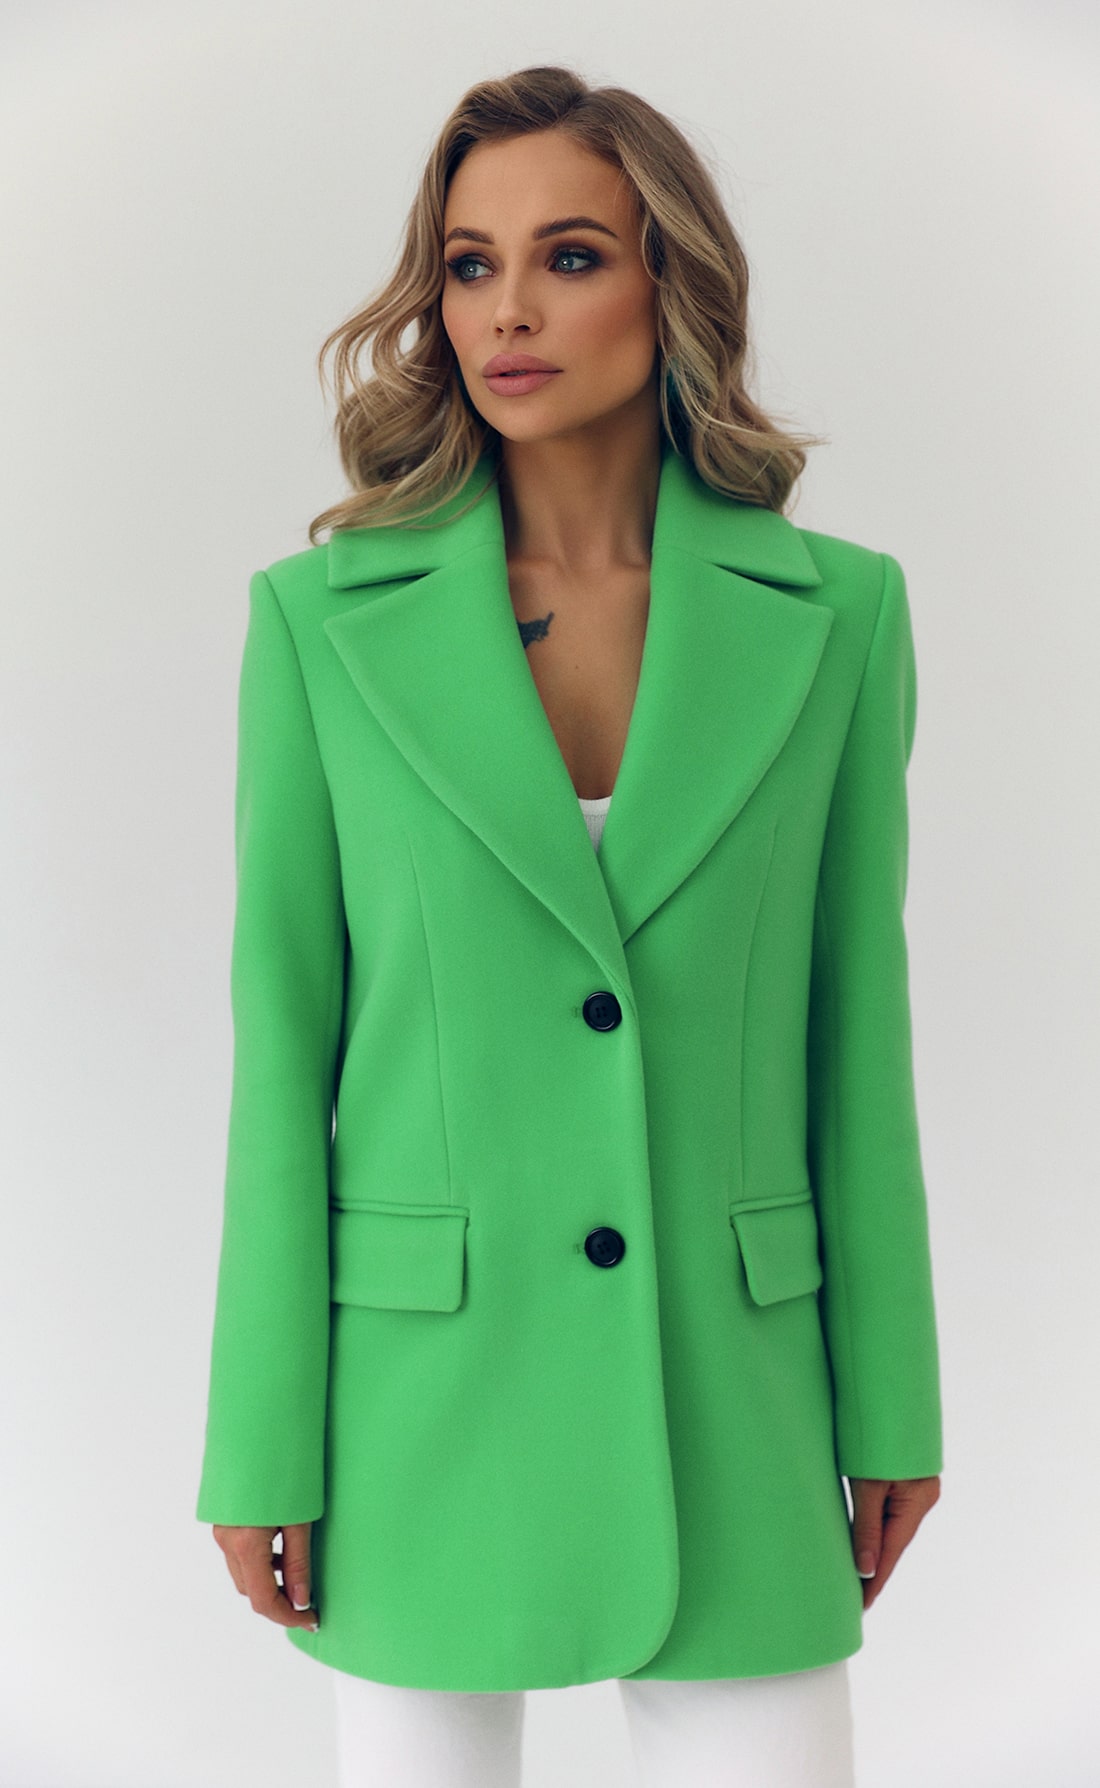 Пальто мини пиджачного кроя зеленое яблоко, Размер: 42 S